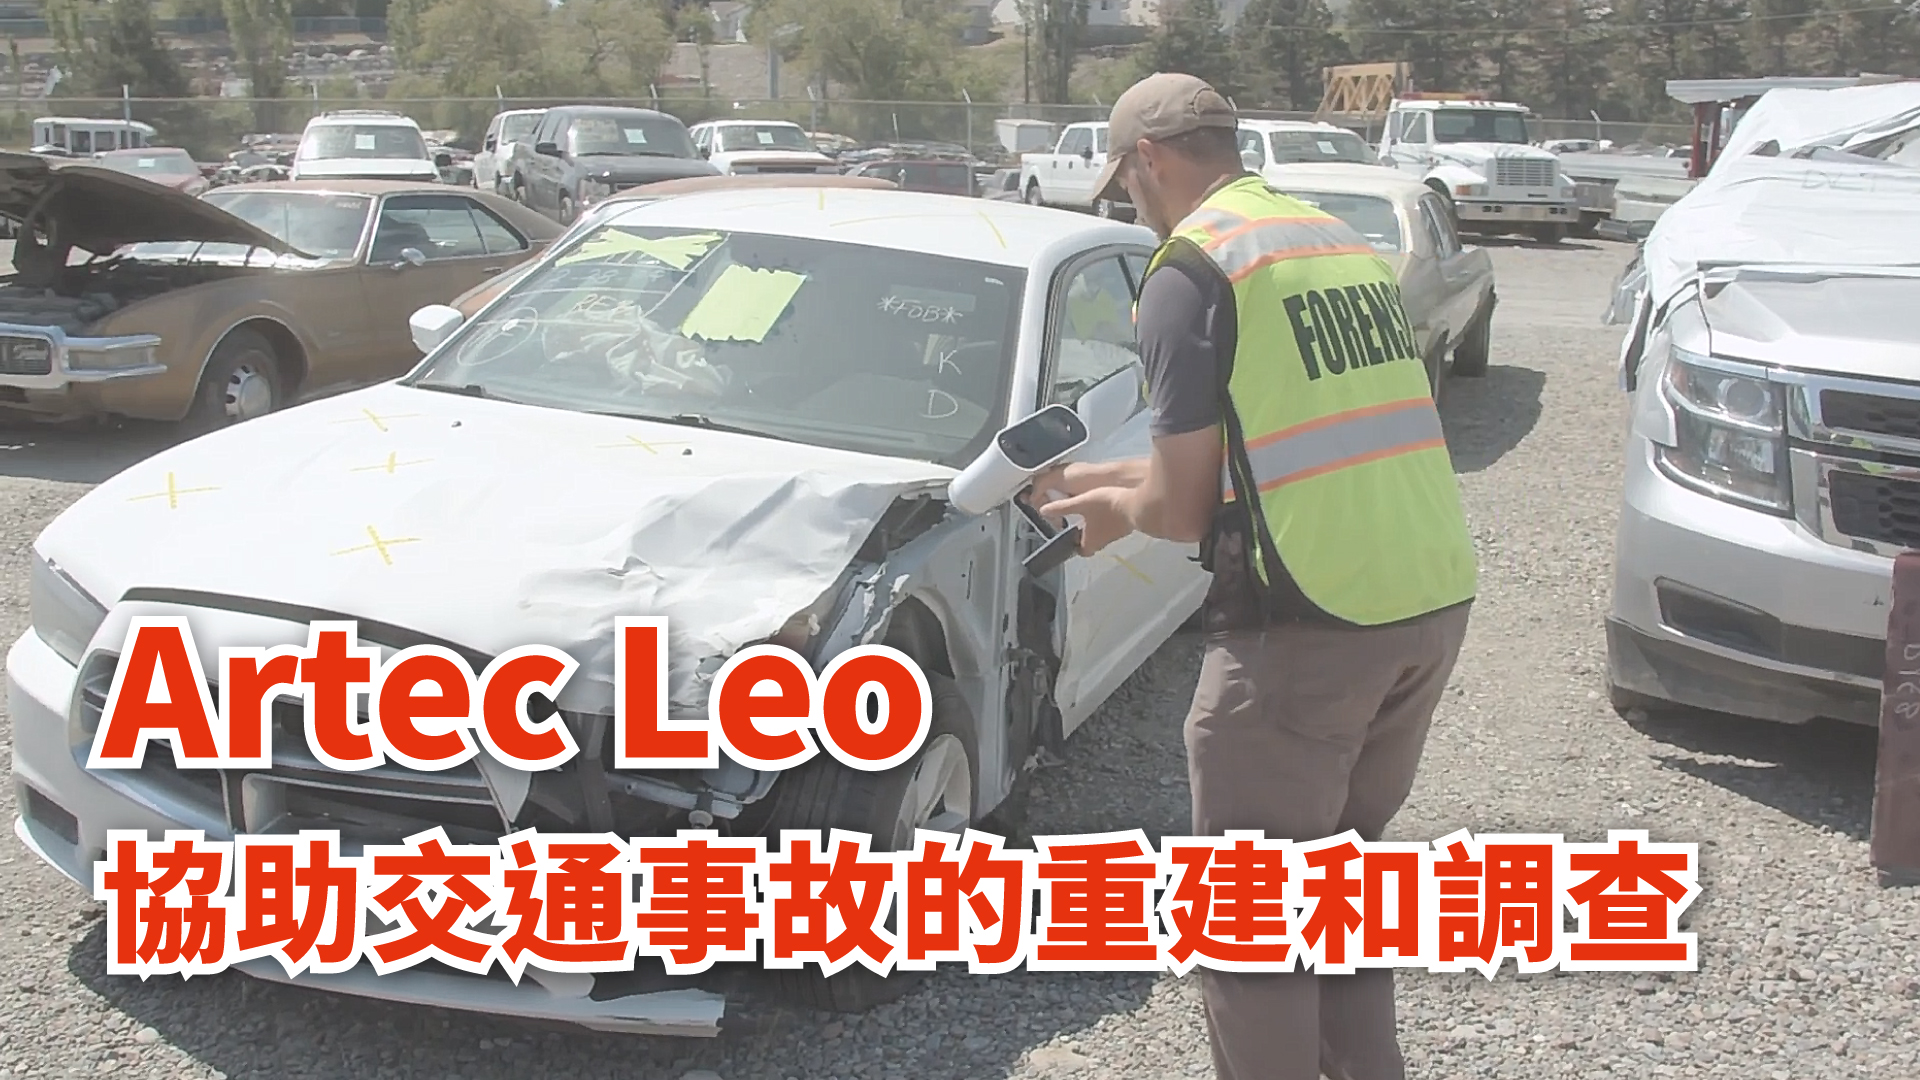 Artec Leo協助交通事故的重建和調查